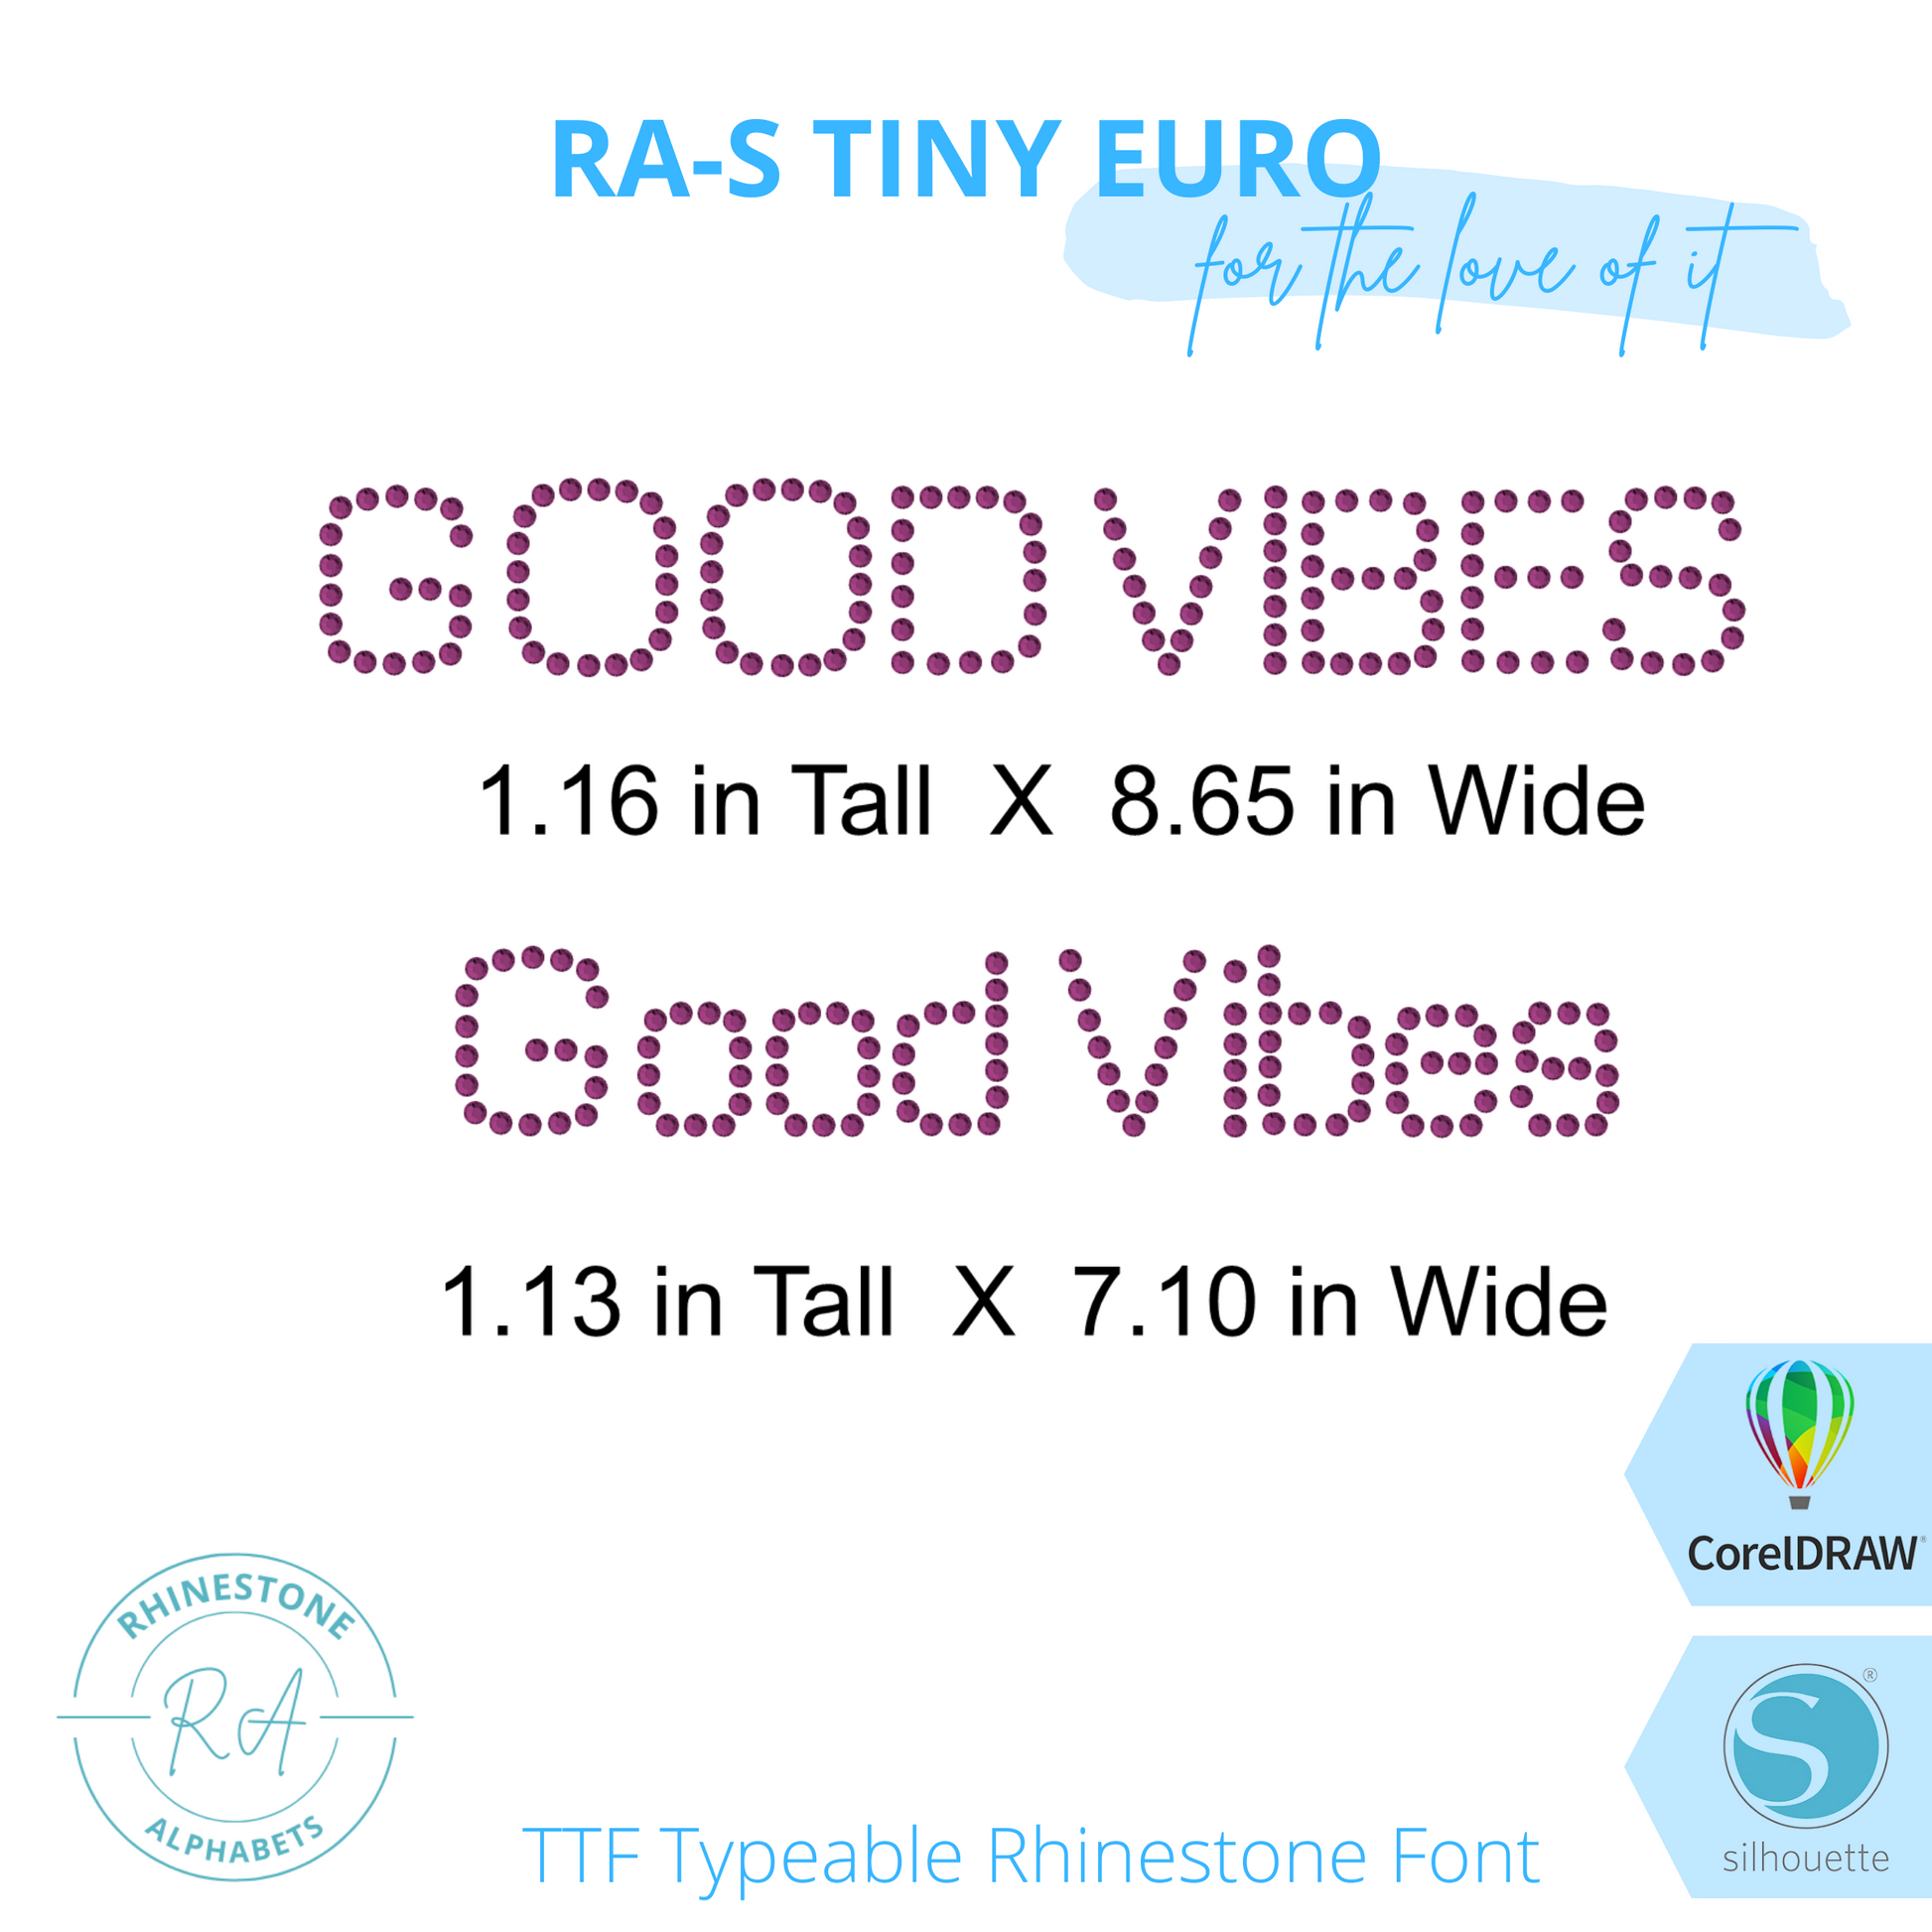 RA-S Tiny Euro - RhinestoneAlphabets